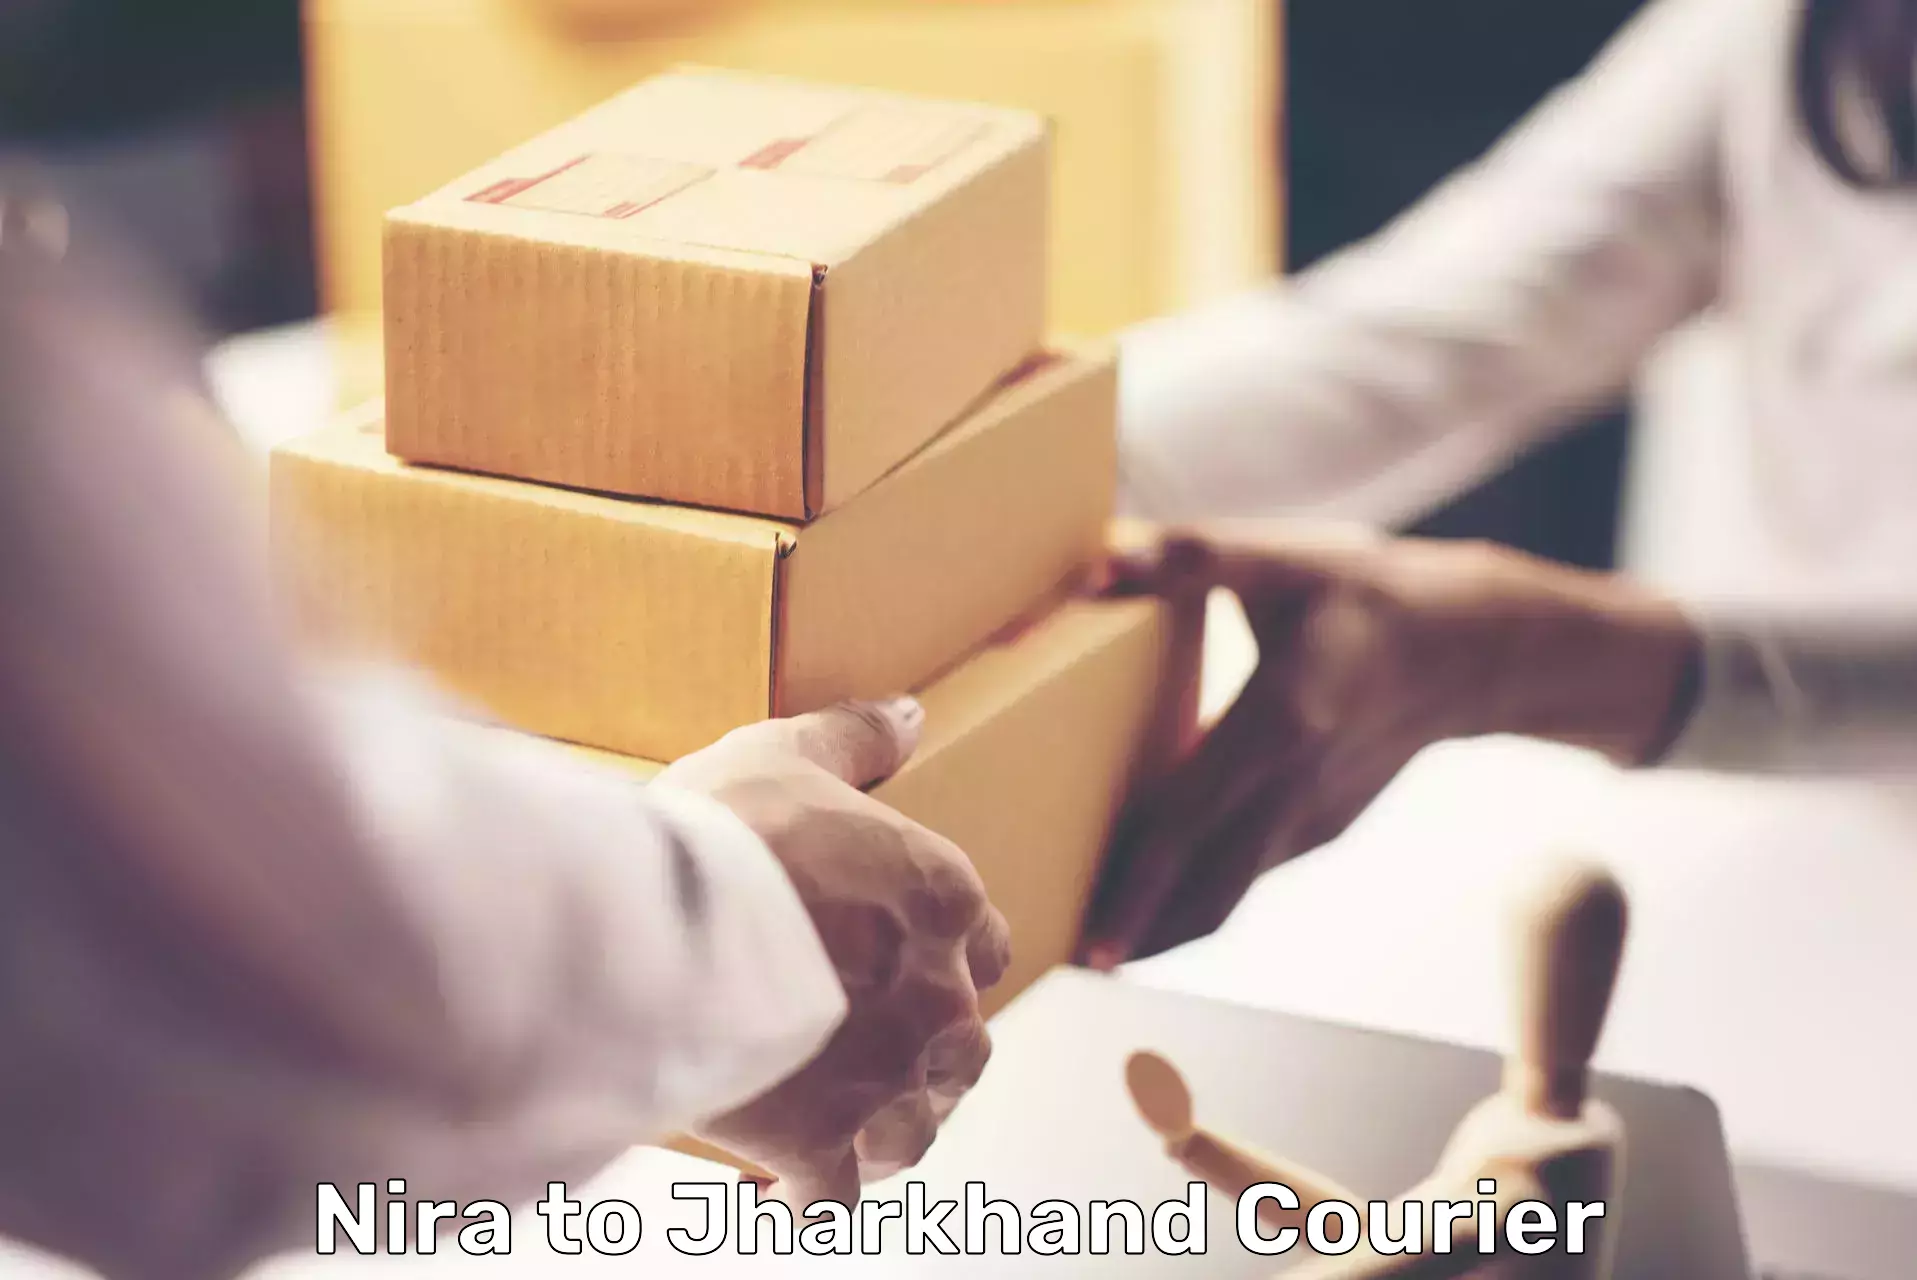 Advanced shipping network Nira to Jharkhand